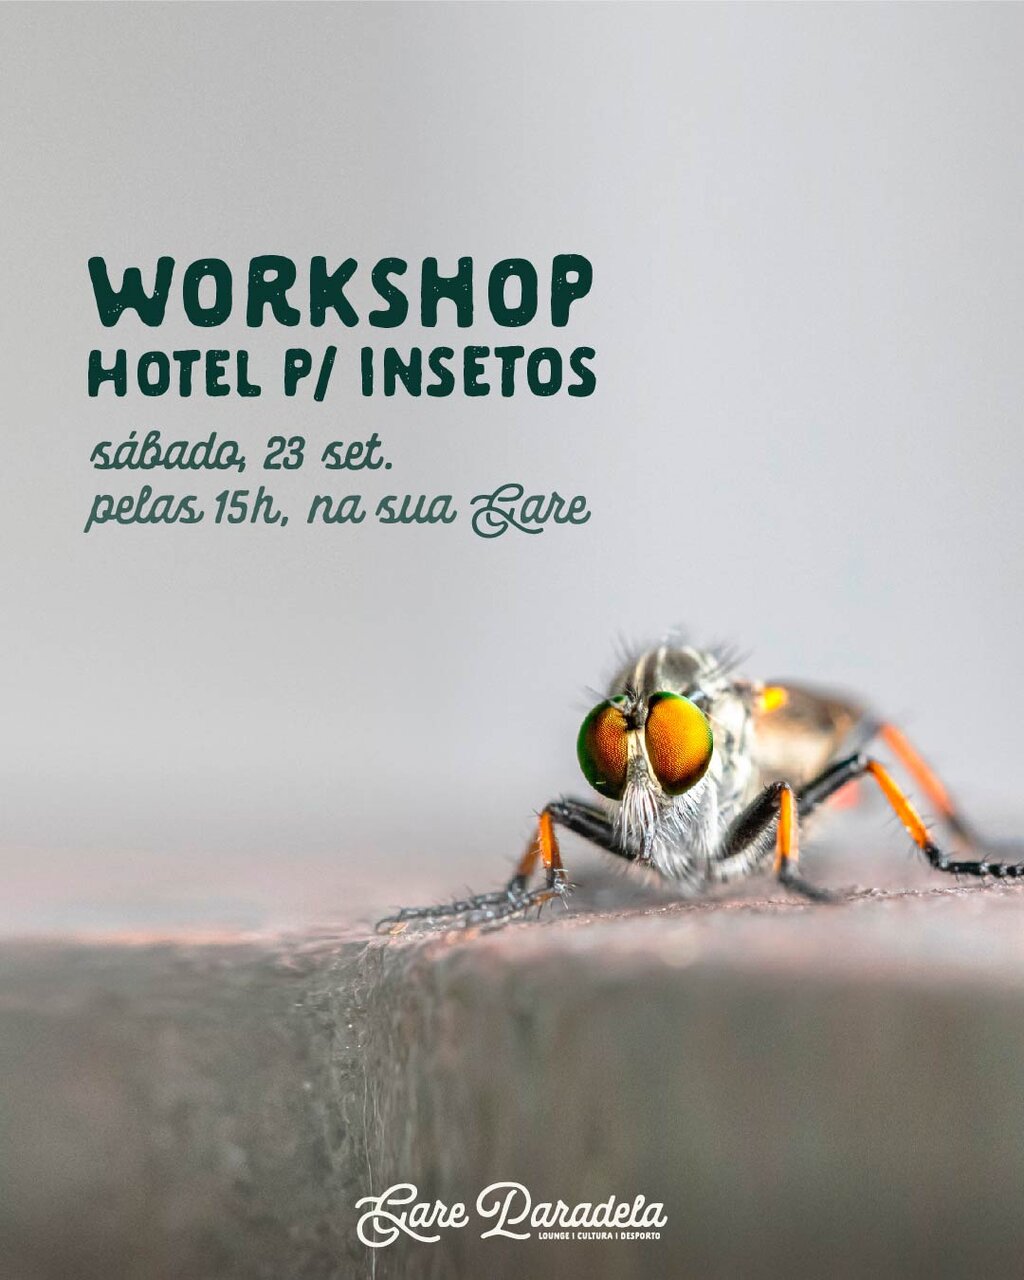 Hotel para insetos - Workshop - Gare Paradela